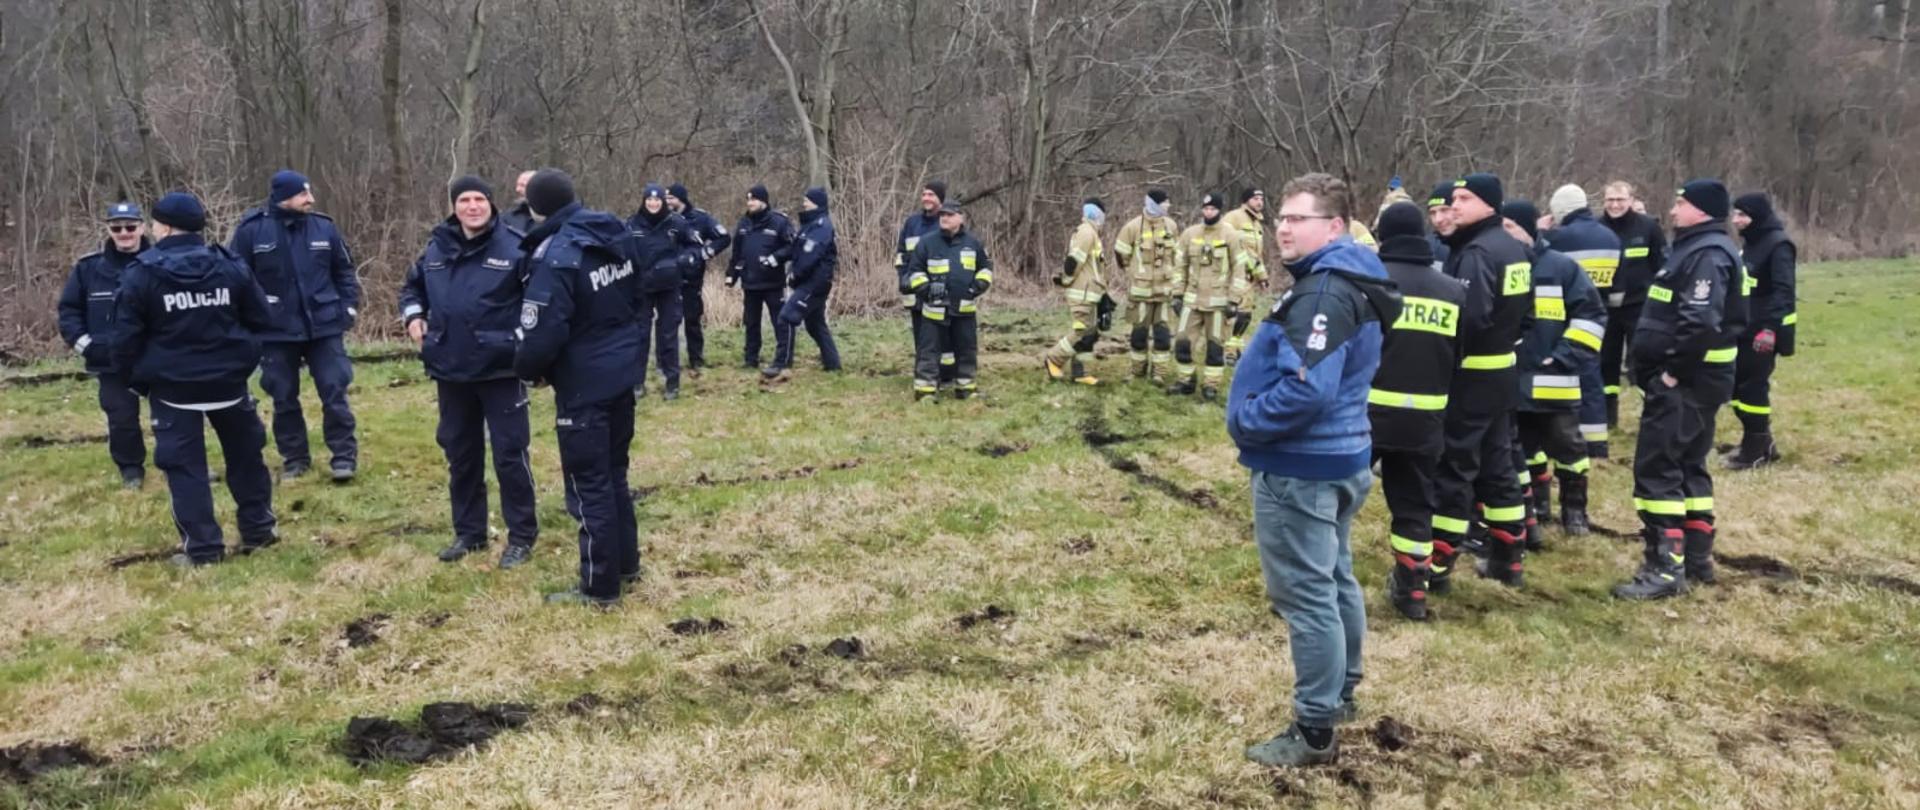 SZCZĘŚLIWY FINAŁ POSZUKIWAŃ. Poszukiwania osoby zaginionej, na zdjęciu widać strażaków, policjantów i osoby cywilne biorące udział w poszukiwaniach.